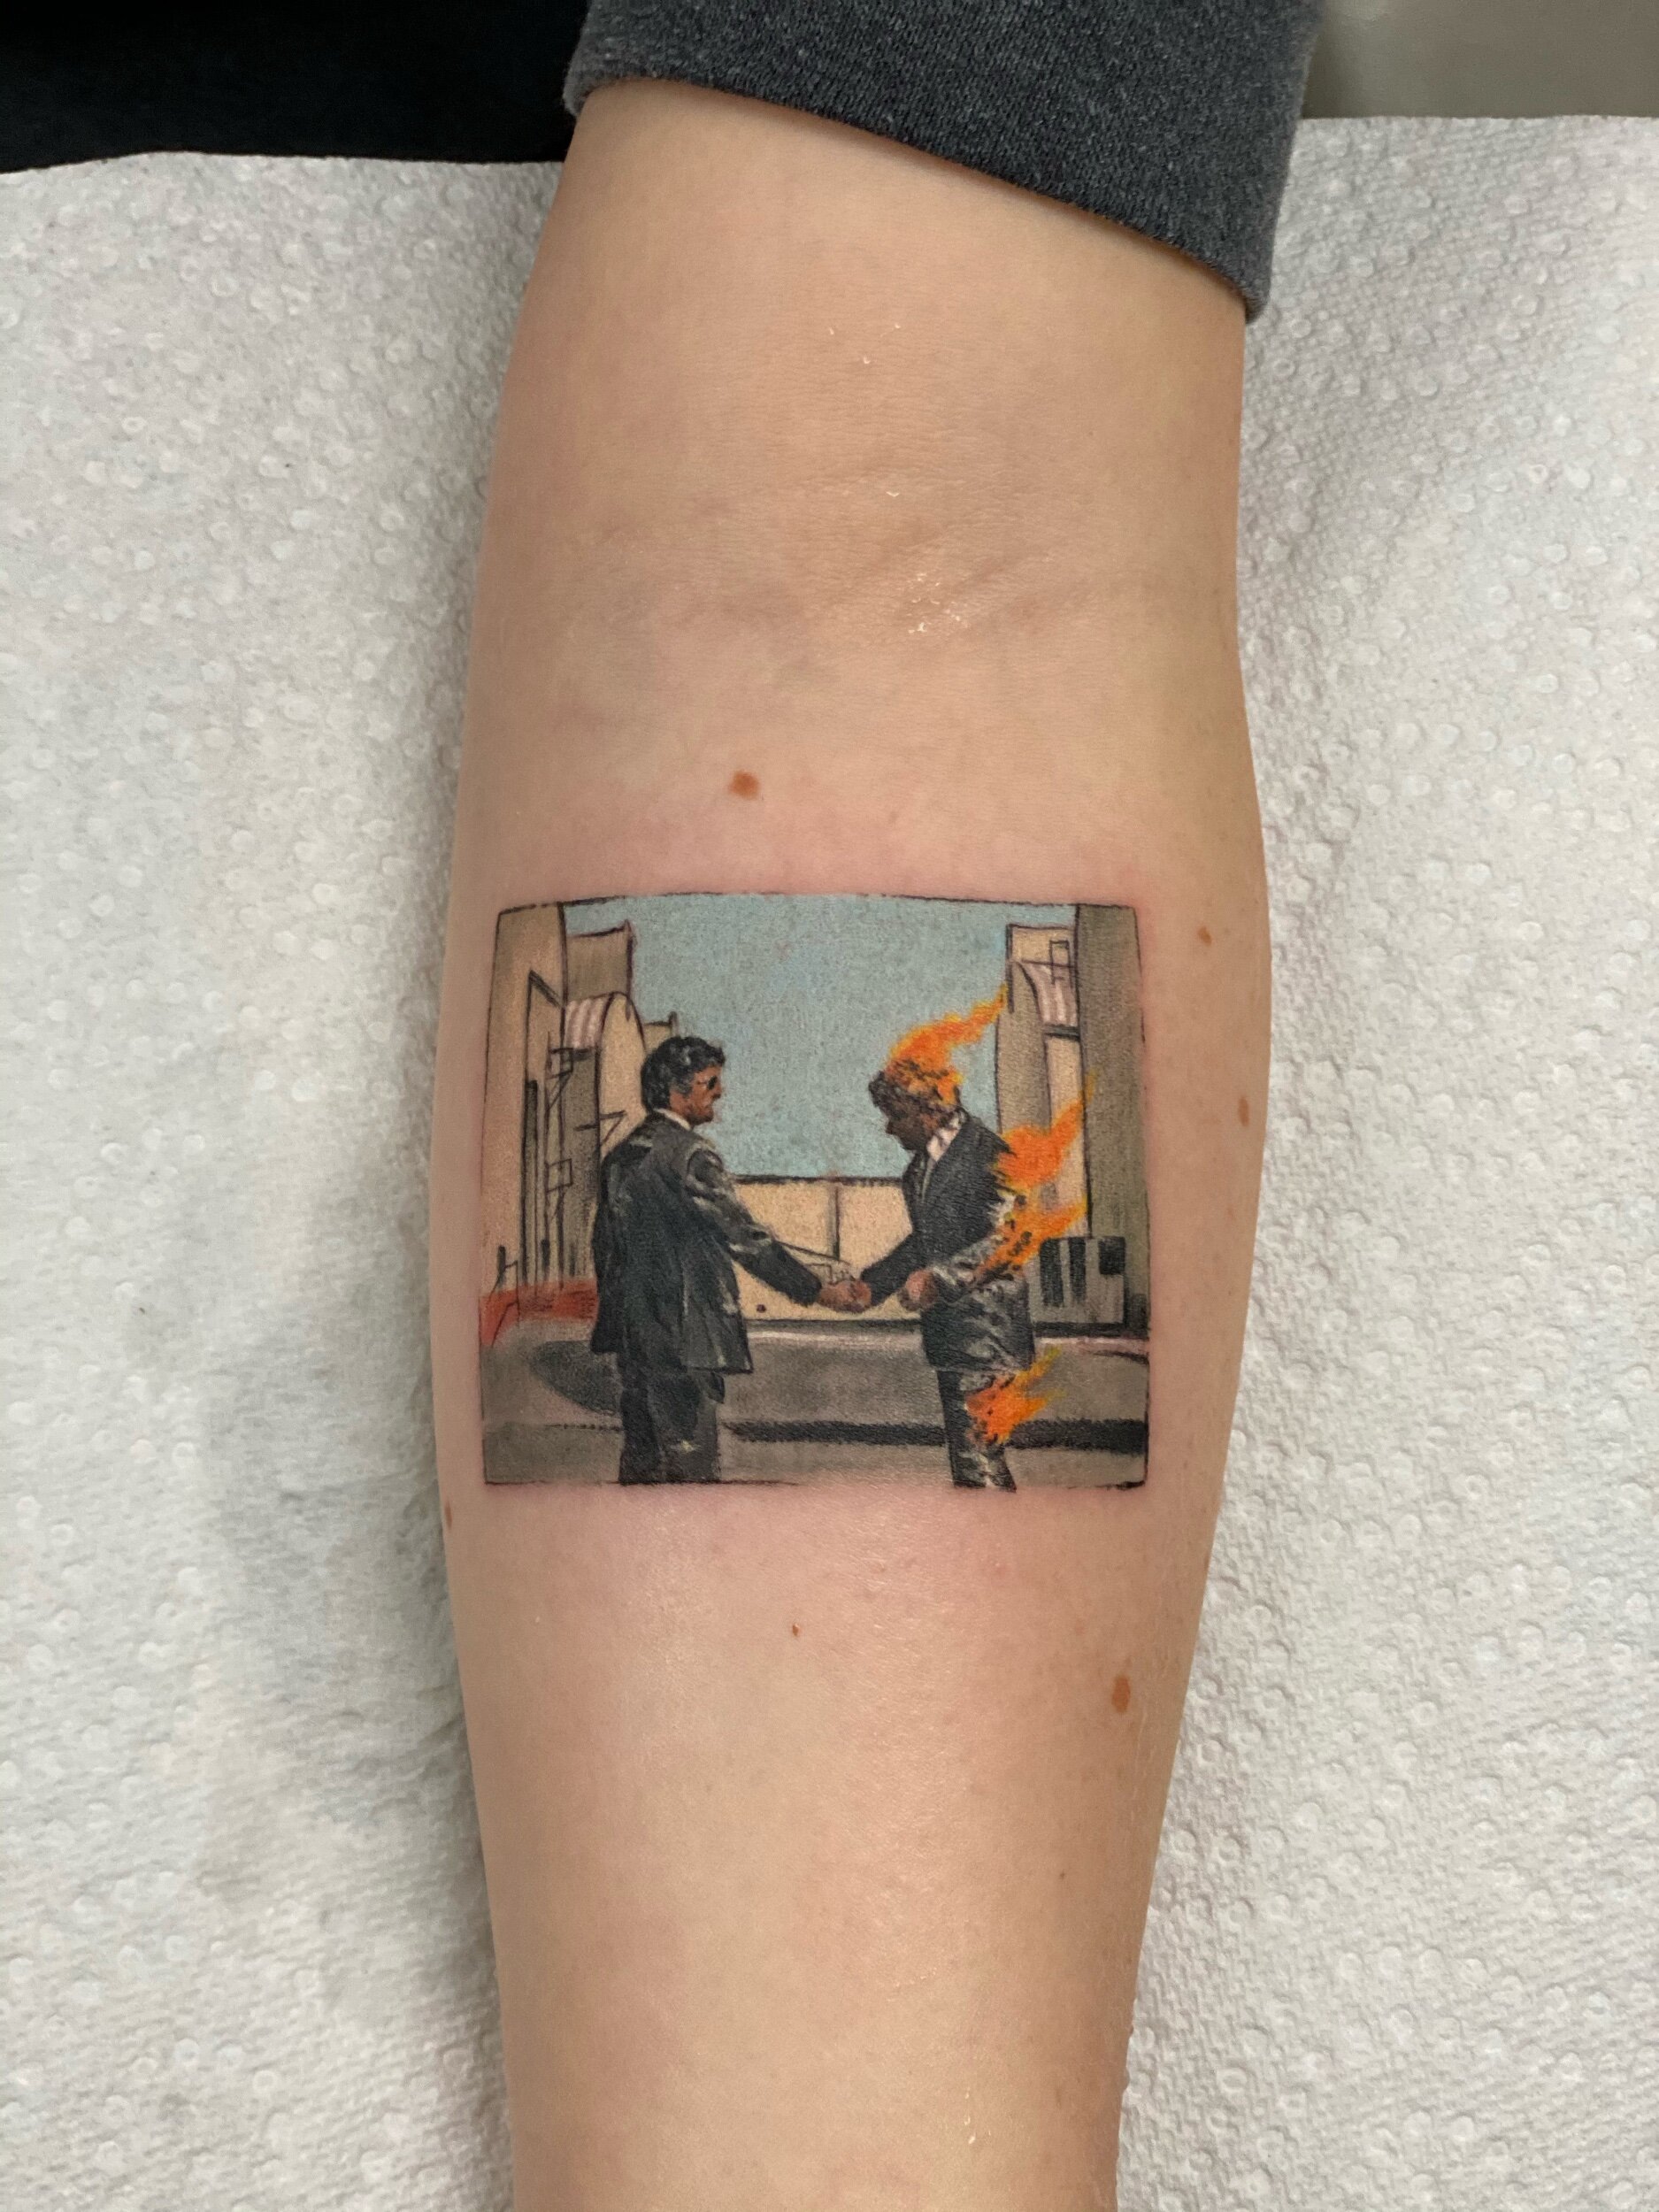 A Clockwork Orange tattoo by VictorStone on DeviantArt